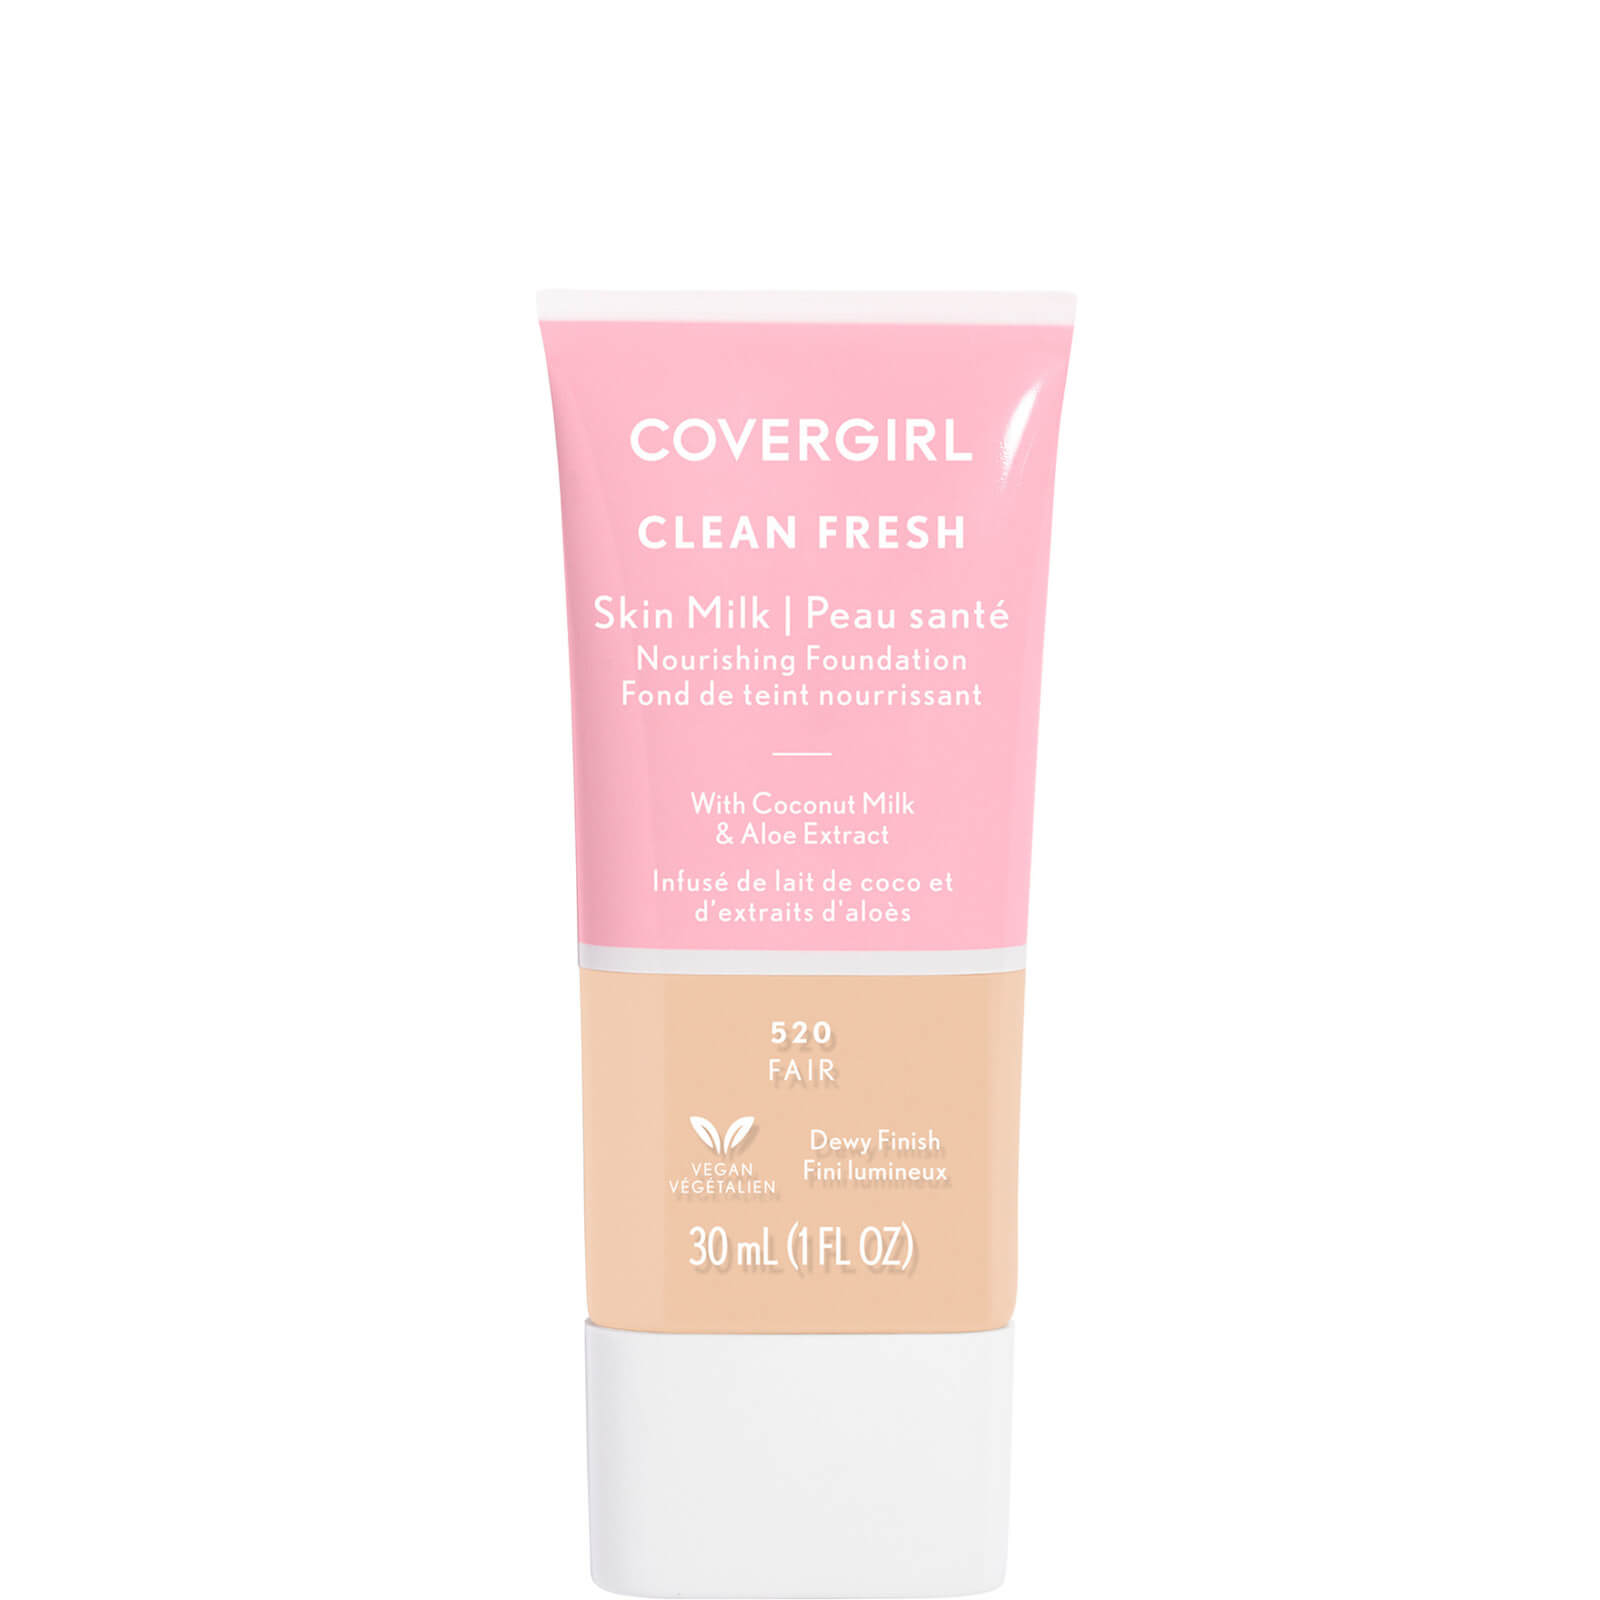 Covergirl Clean Fresh Skin Milk Foundation 1oz (Various Shades) - Fair